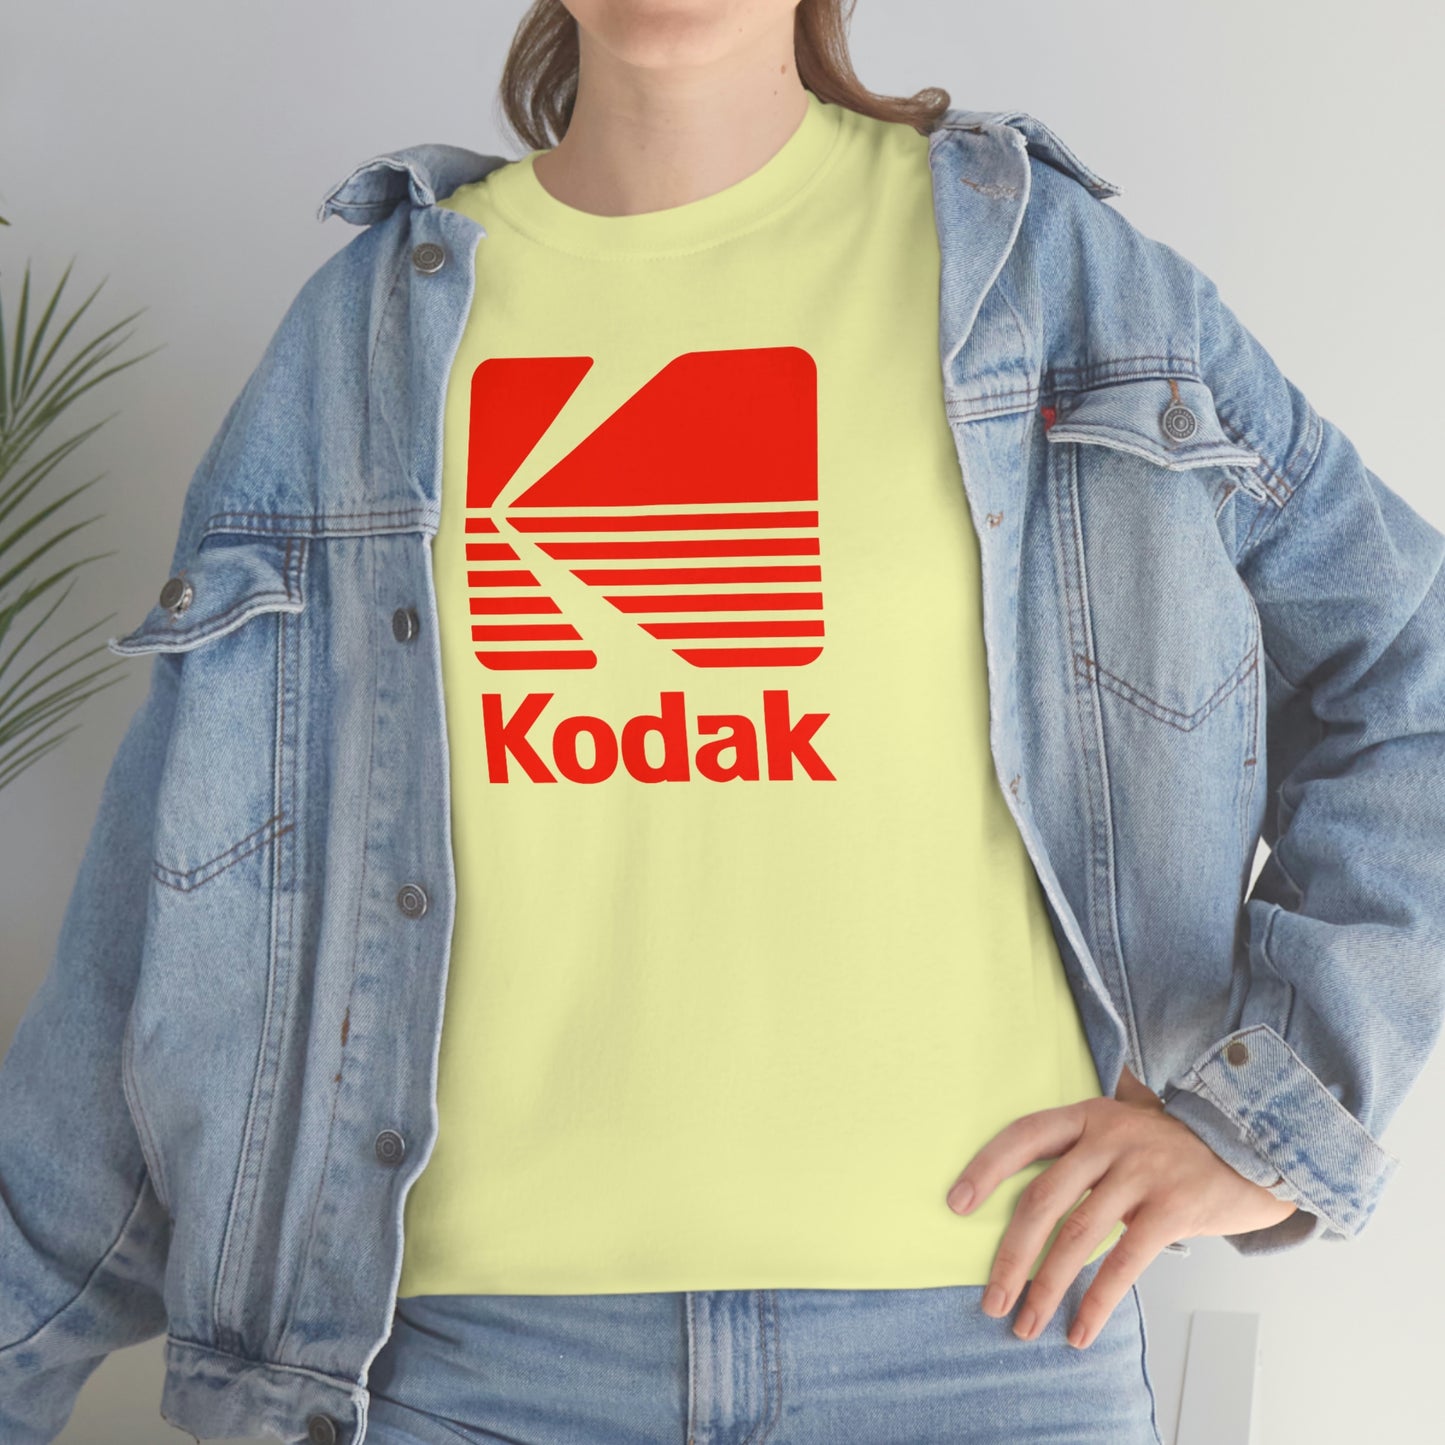 Kodak T-Shirt